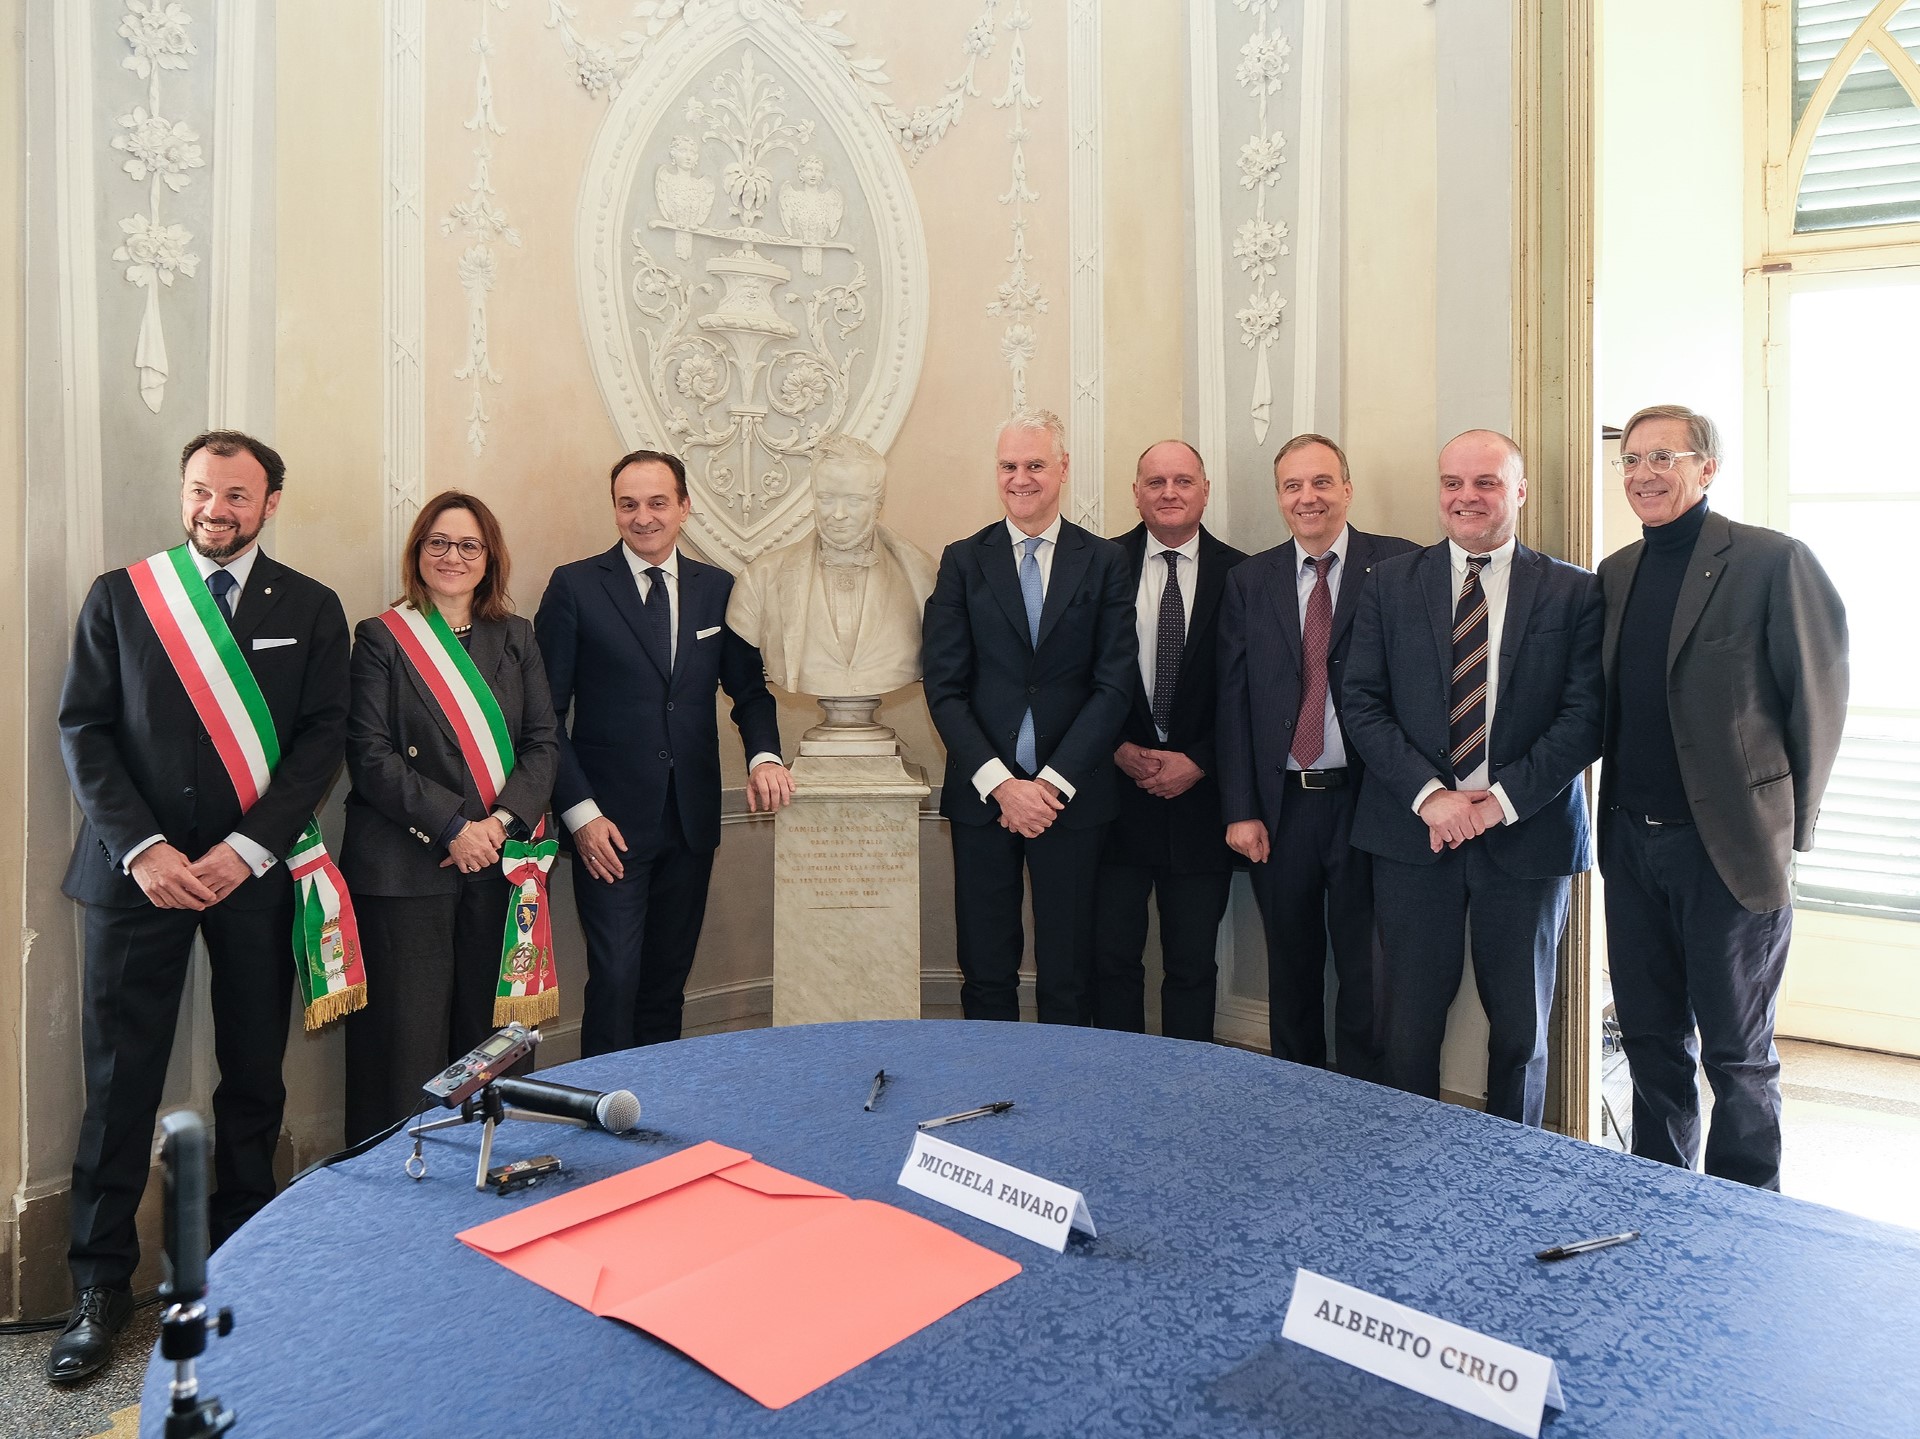 Firmato il Protocollo d’Intesa per il Polo formativo territoriale SNA in Piemonte con focus su digitalizzazione e intelligenza artificiale